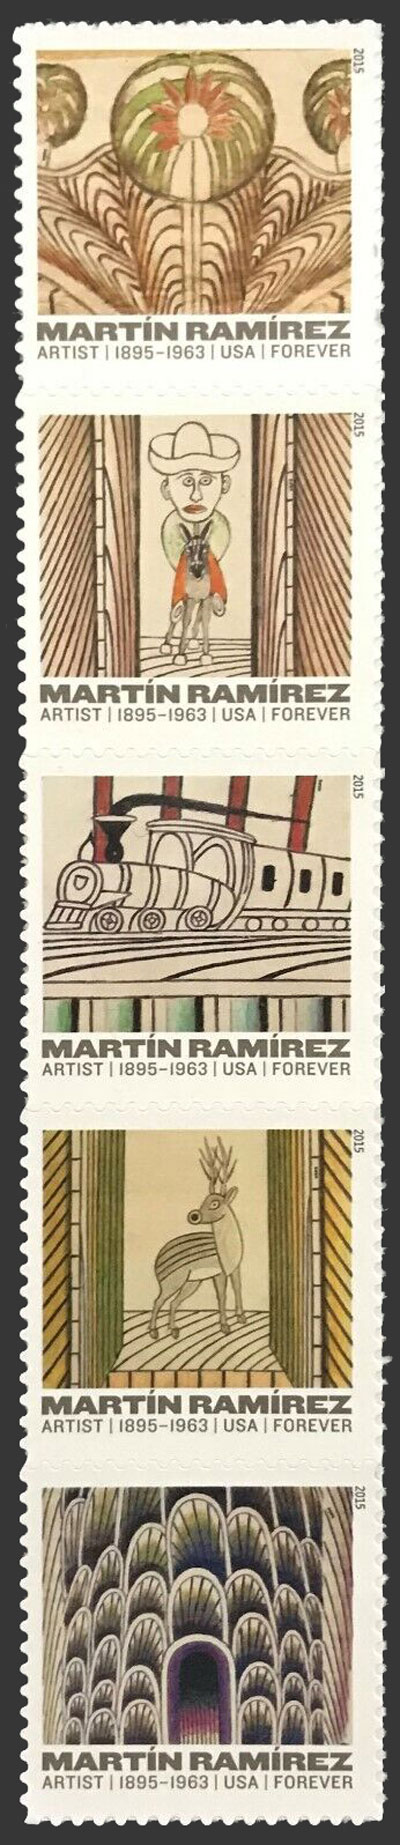 US 2015 Martin Ramirez Arts ; Se-tenant 49c.x5 Scott. 4972a